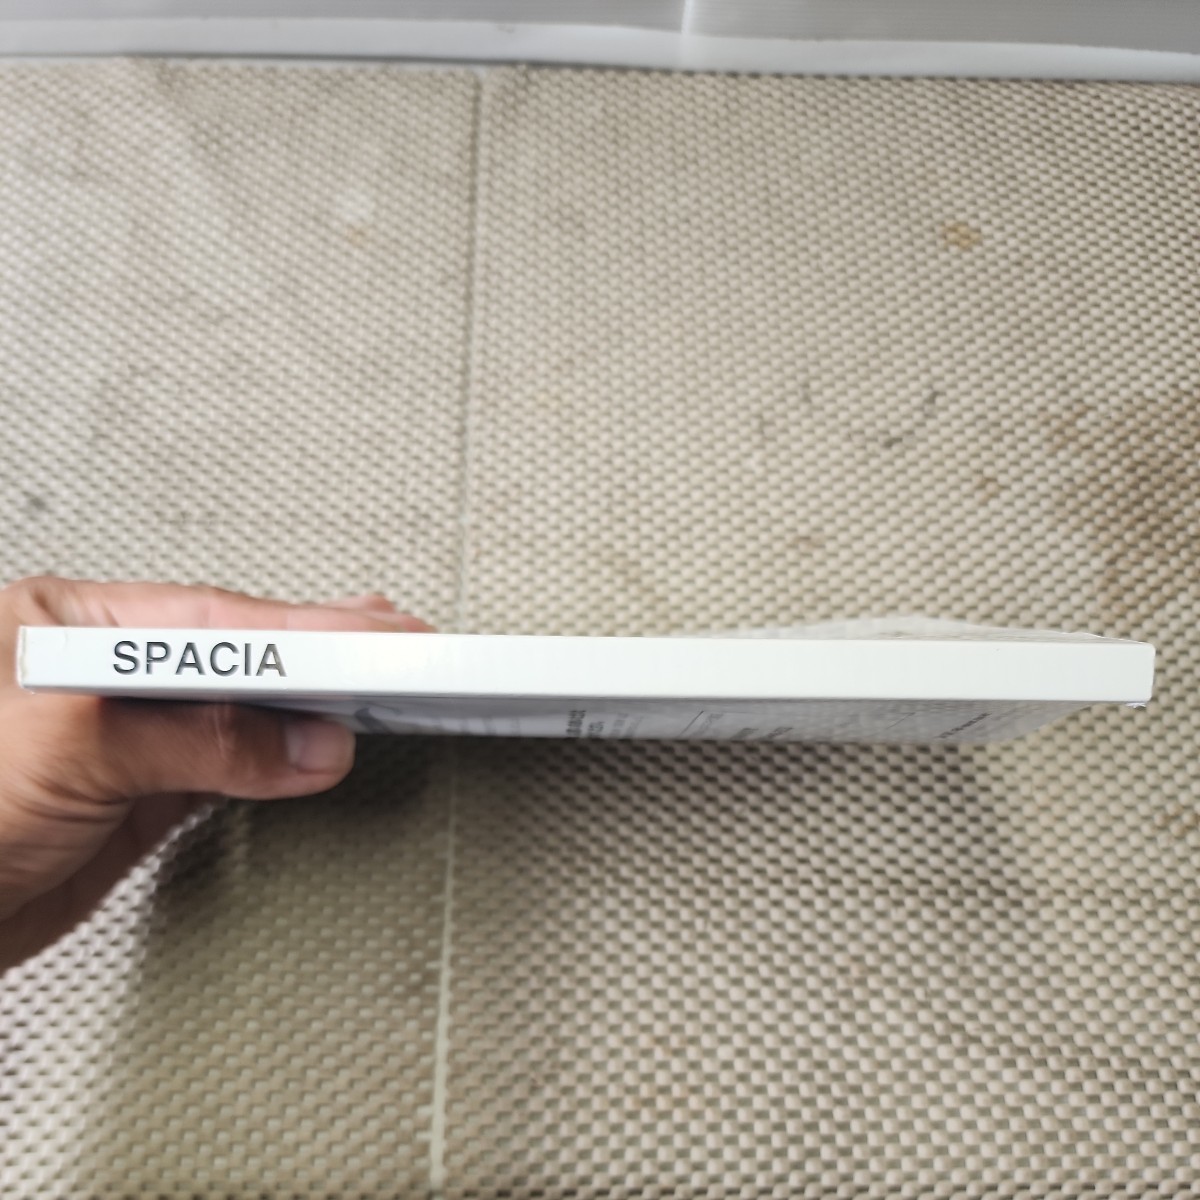  Spacia SPACIA MK53S обращение информация 2014 год 1 месяц печать (H231006)